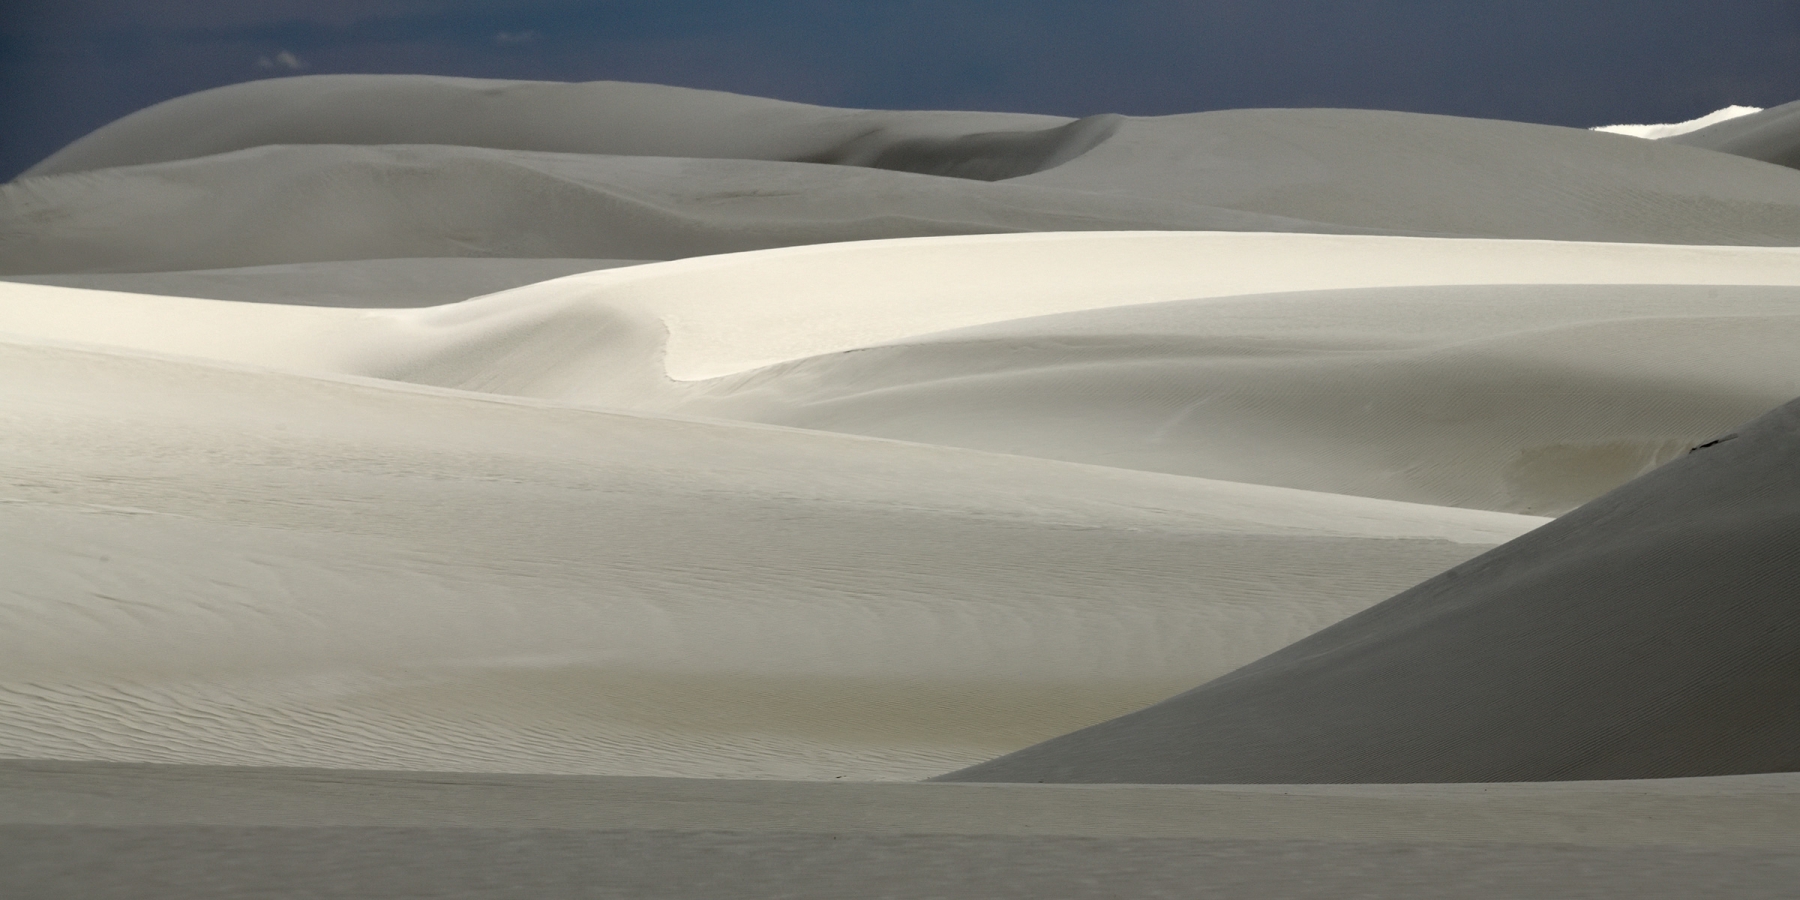 White Sands National Park (Nouveau Mexique, USA) - Dunes de sable blanc : jeux d'ombre et de lumière 